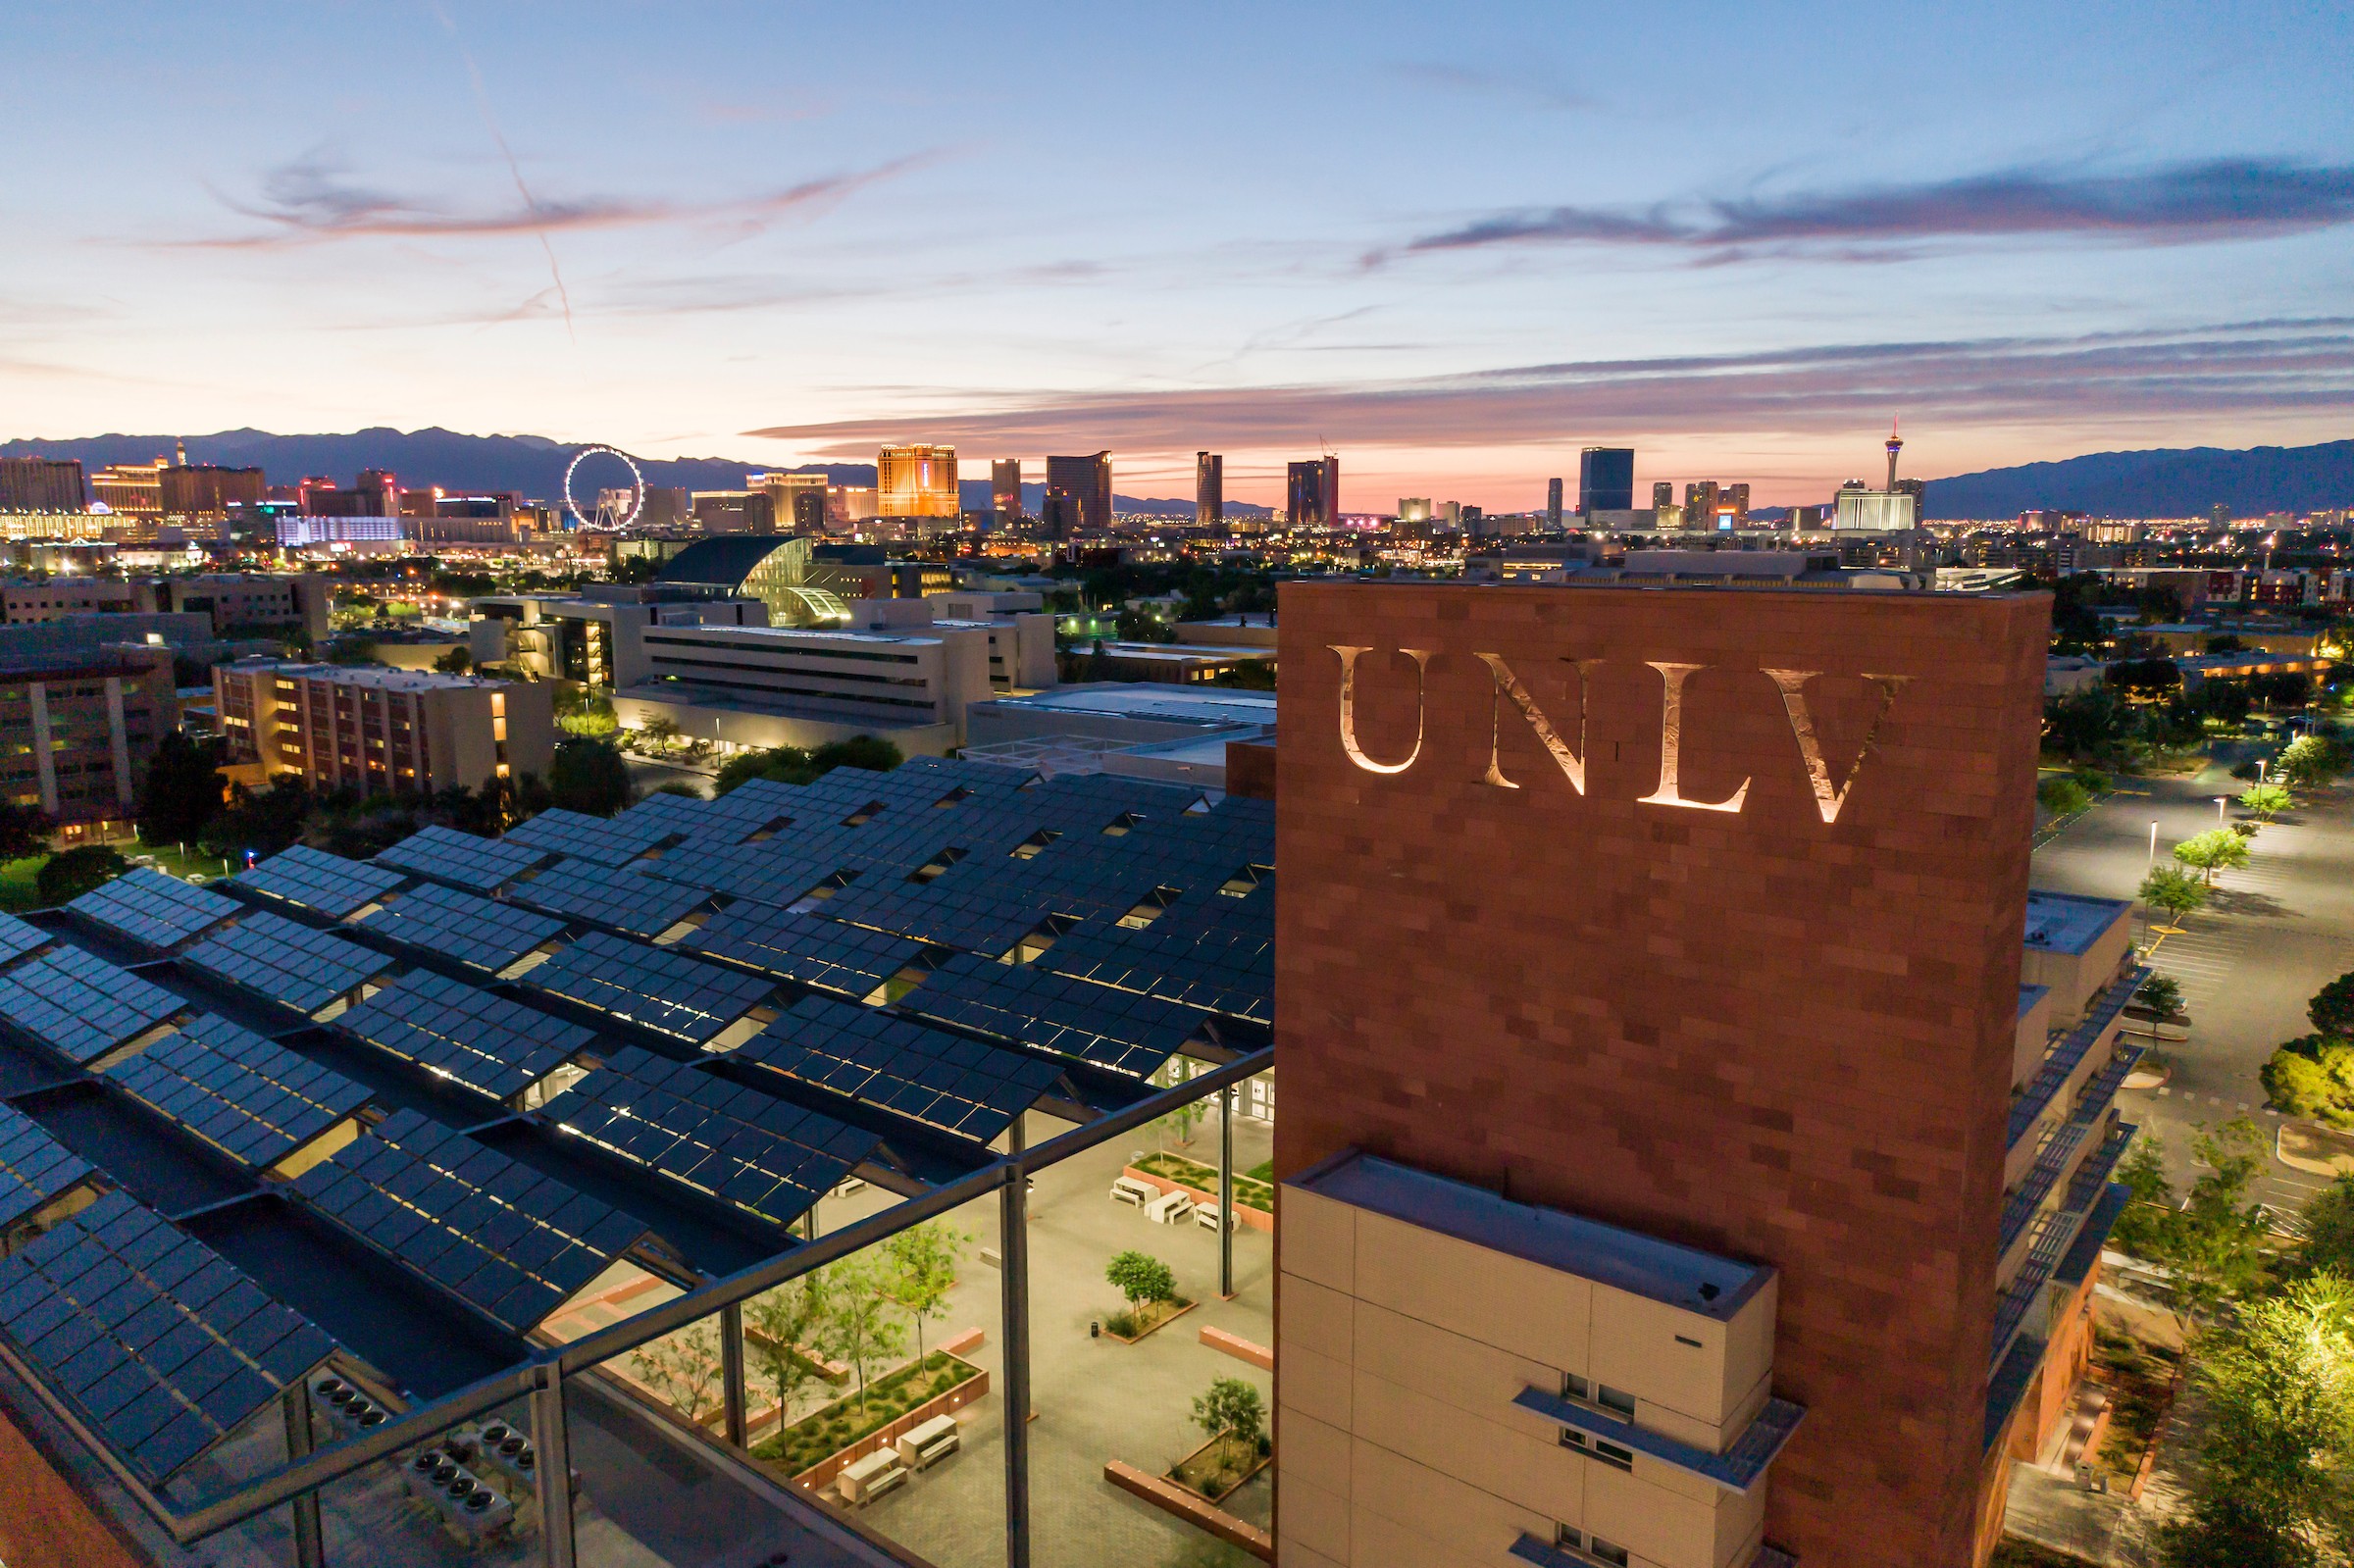 University of Nevada Las Vegas